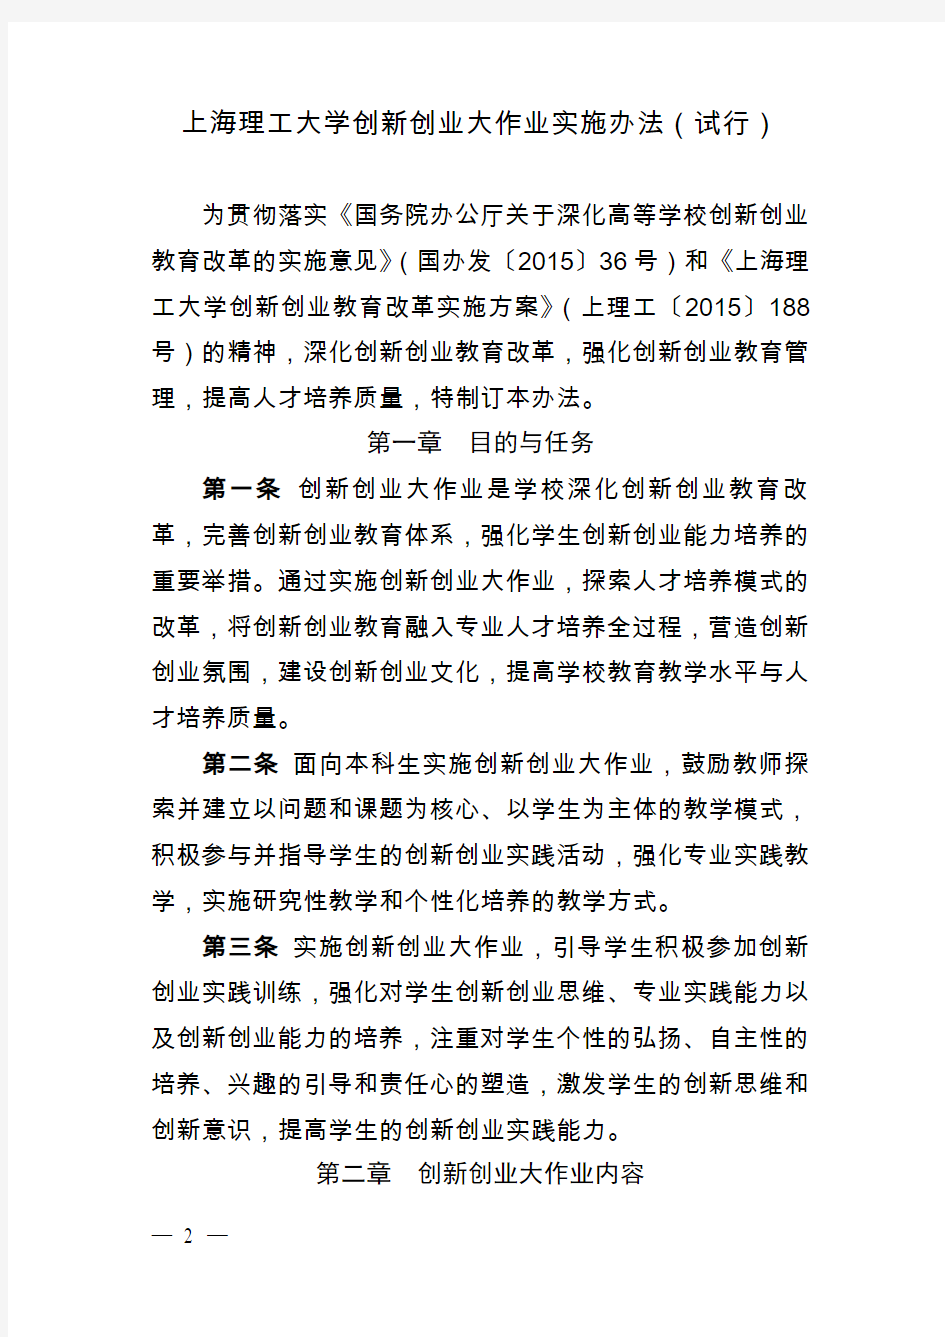 上海理工大学创新创业大作业实施办法-上海理工大学外语学院